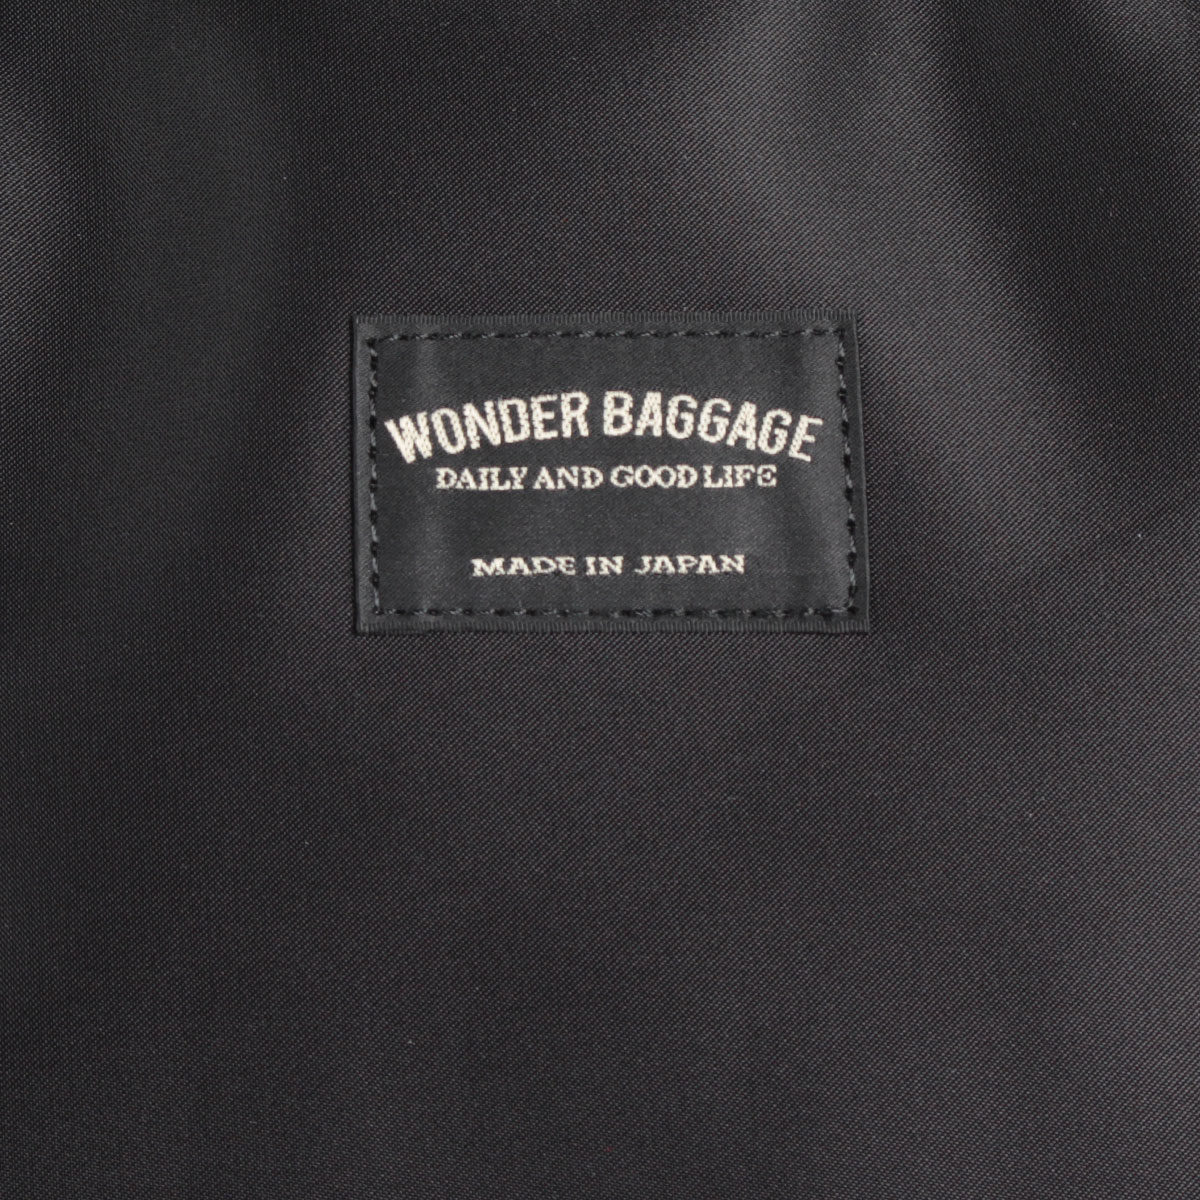 ワンダーバゲージ WONDER BAGGAGE インビジブルトート INVISIBLE 超熱 TOTE WR バッグ メンズ 黒 トートバッグ  ブラックネイビー レディース ビジネスバッグ チョコ WB-G-028